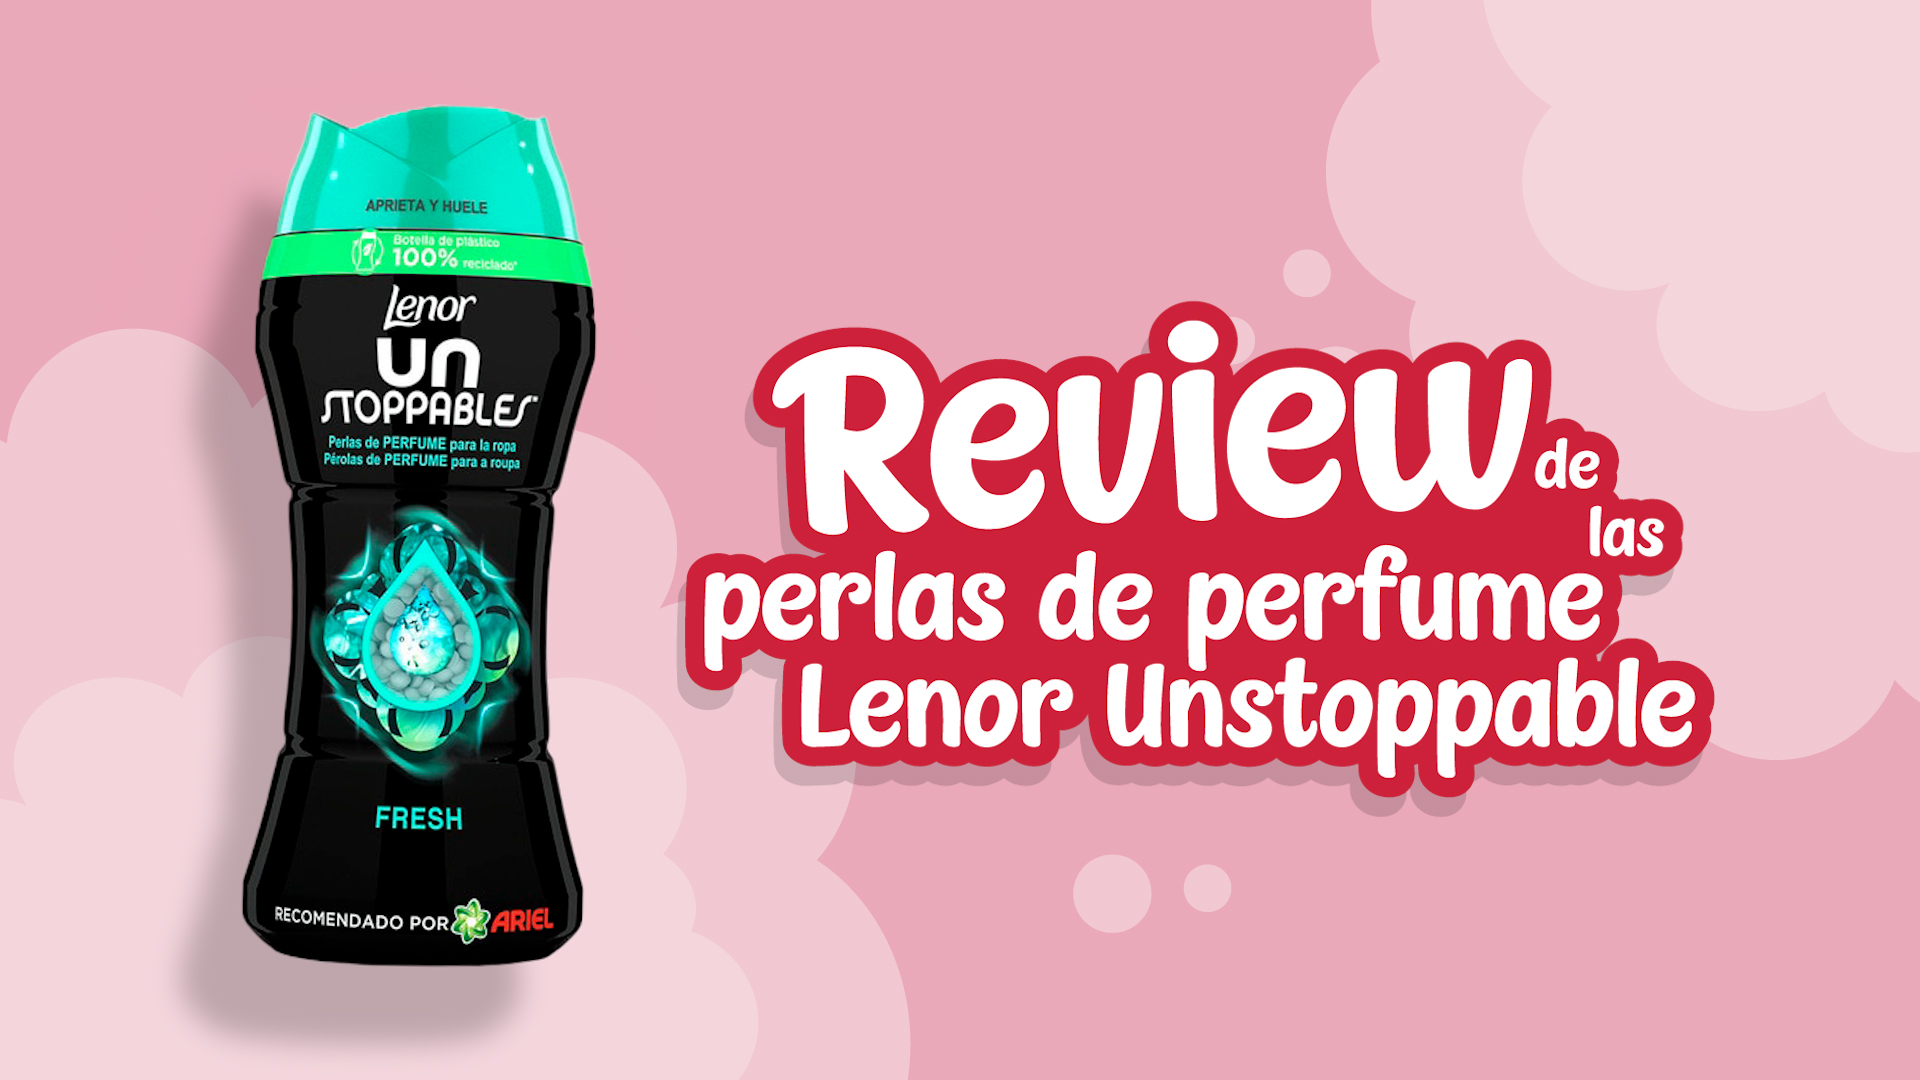 Opiniones de las perlas de perfume Lenor Unstoppable - Review de las perlas de perfume Lenor Unstoppable